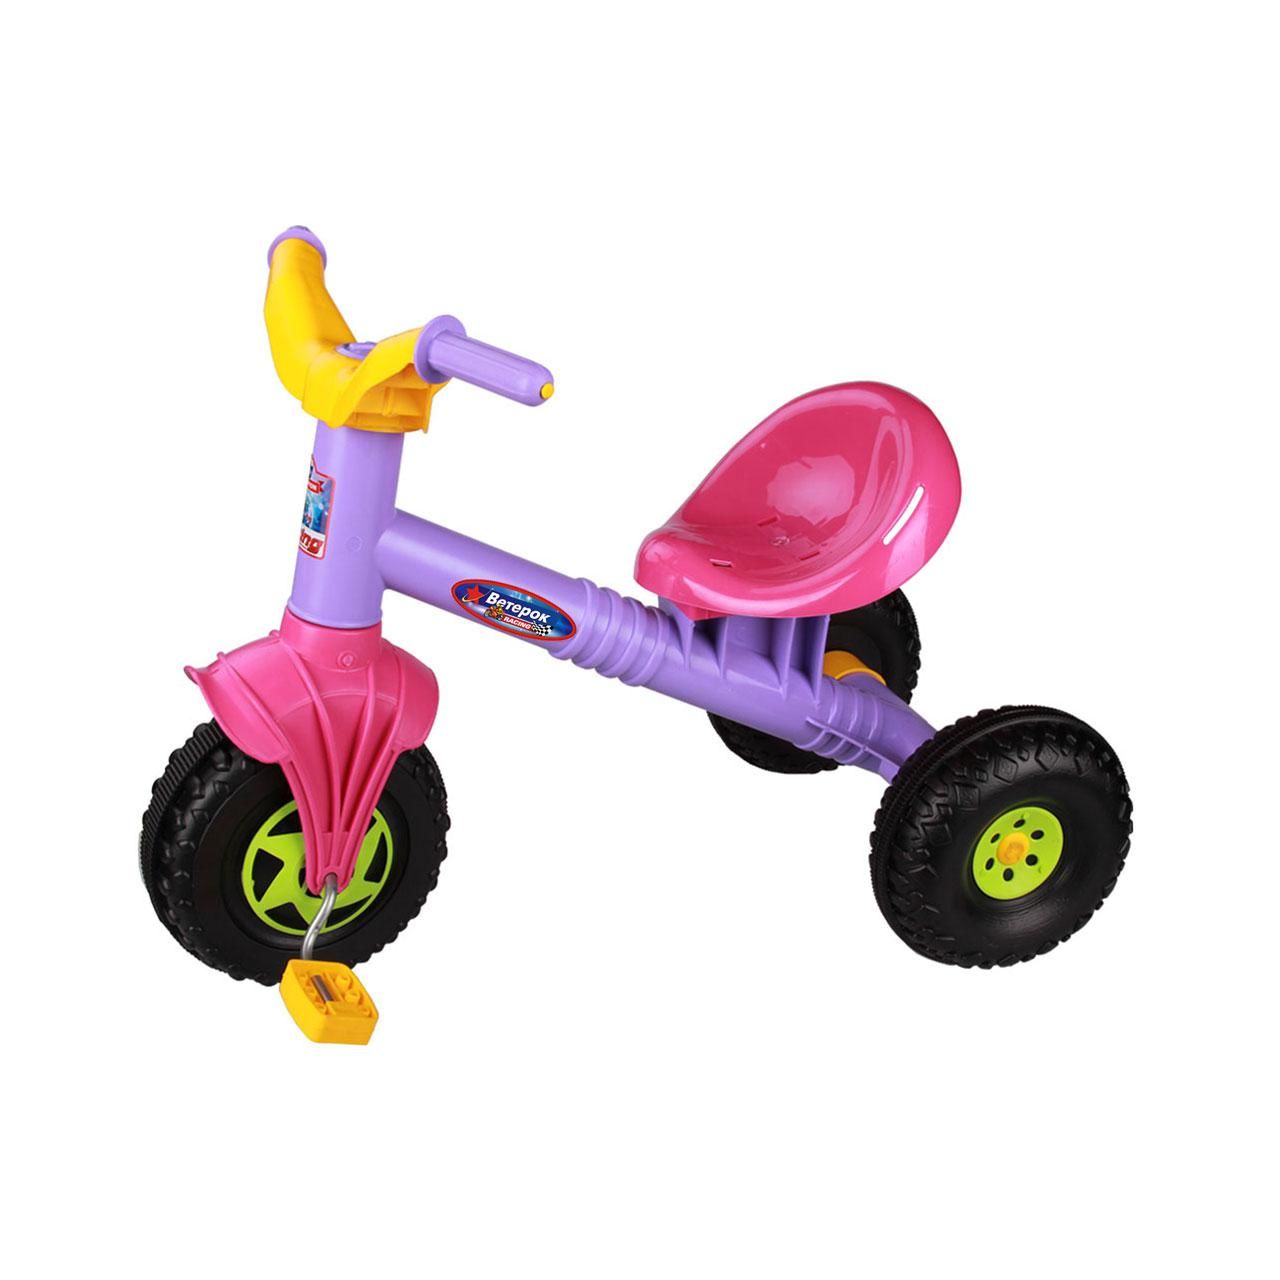 Детские трехколесные велосипеды от 2 лет. Трехколесный велосипед альтернатива ветерок м5249. Трехколесный велосипед Nika вдн5м,. Велосипедттрехколесный ветерок. Толокар m651 красный.